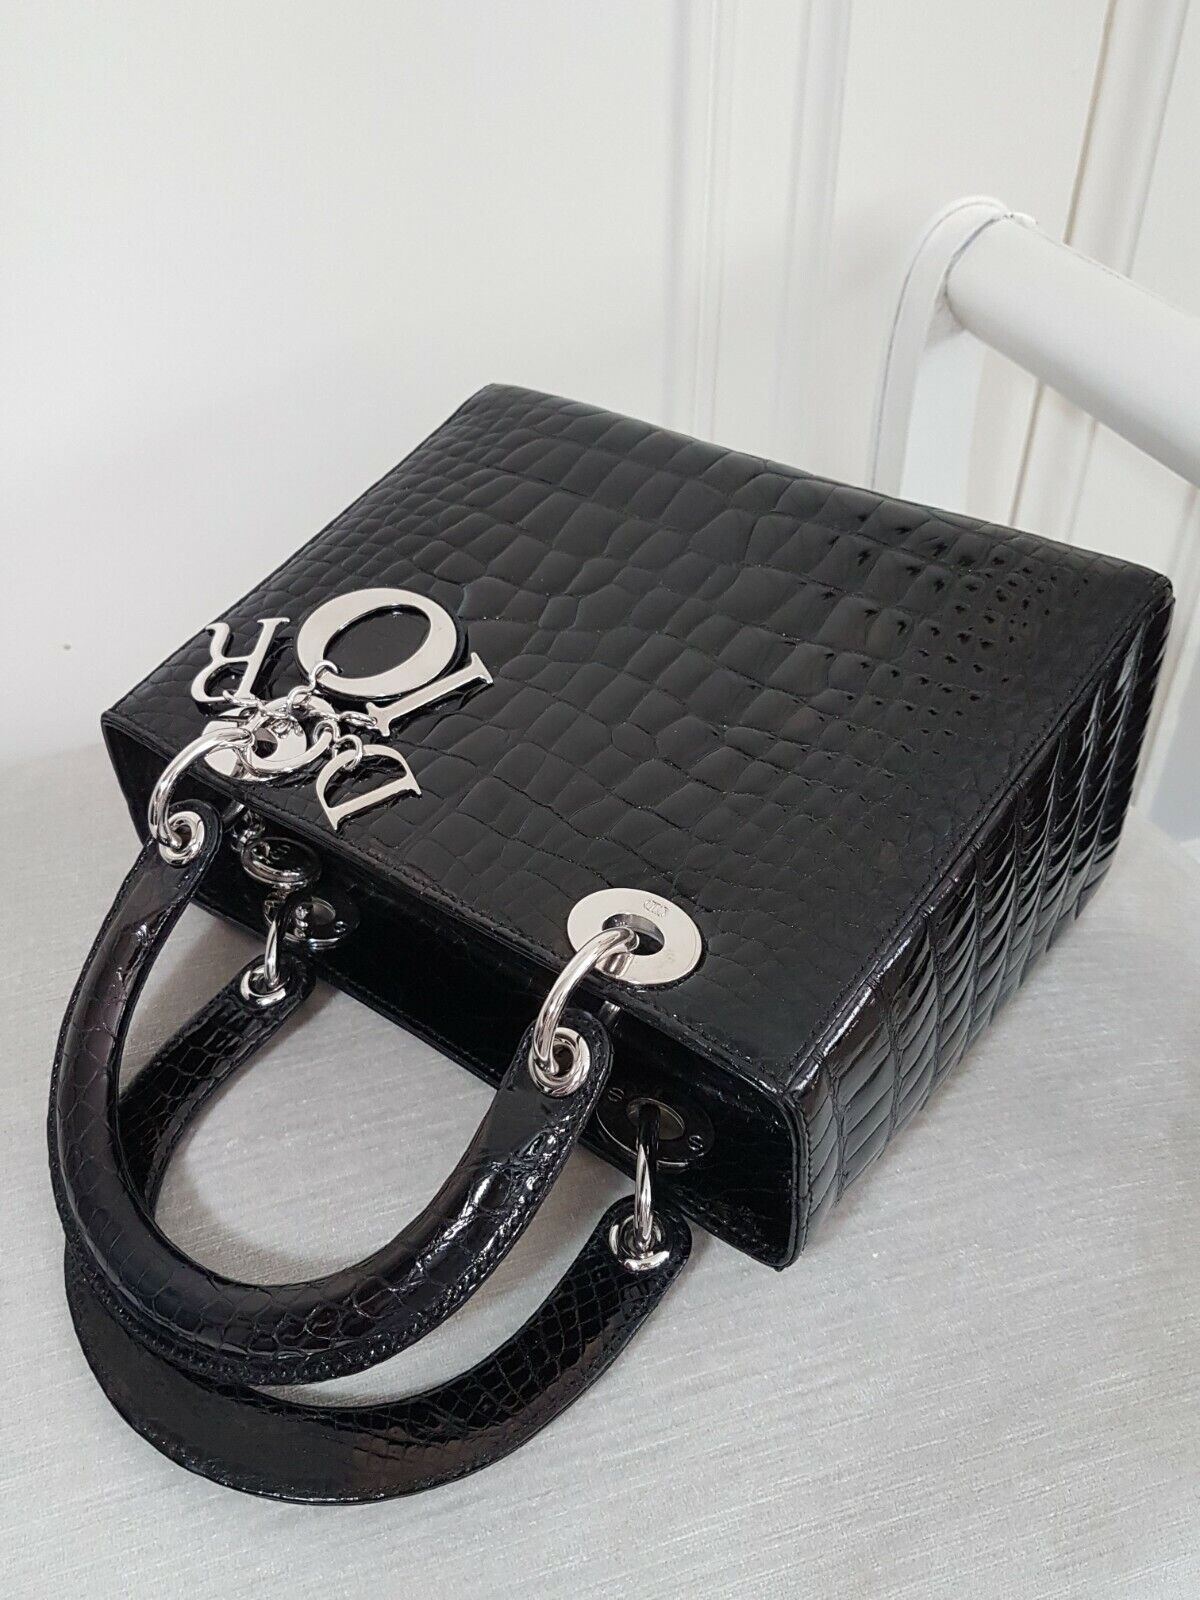 Dior handbags 2019  Dior handbags Lady dior bag Dior